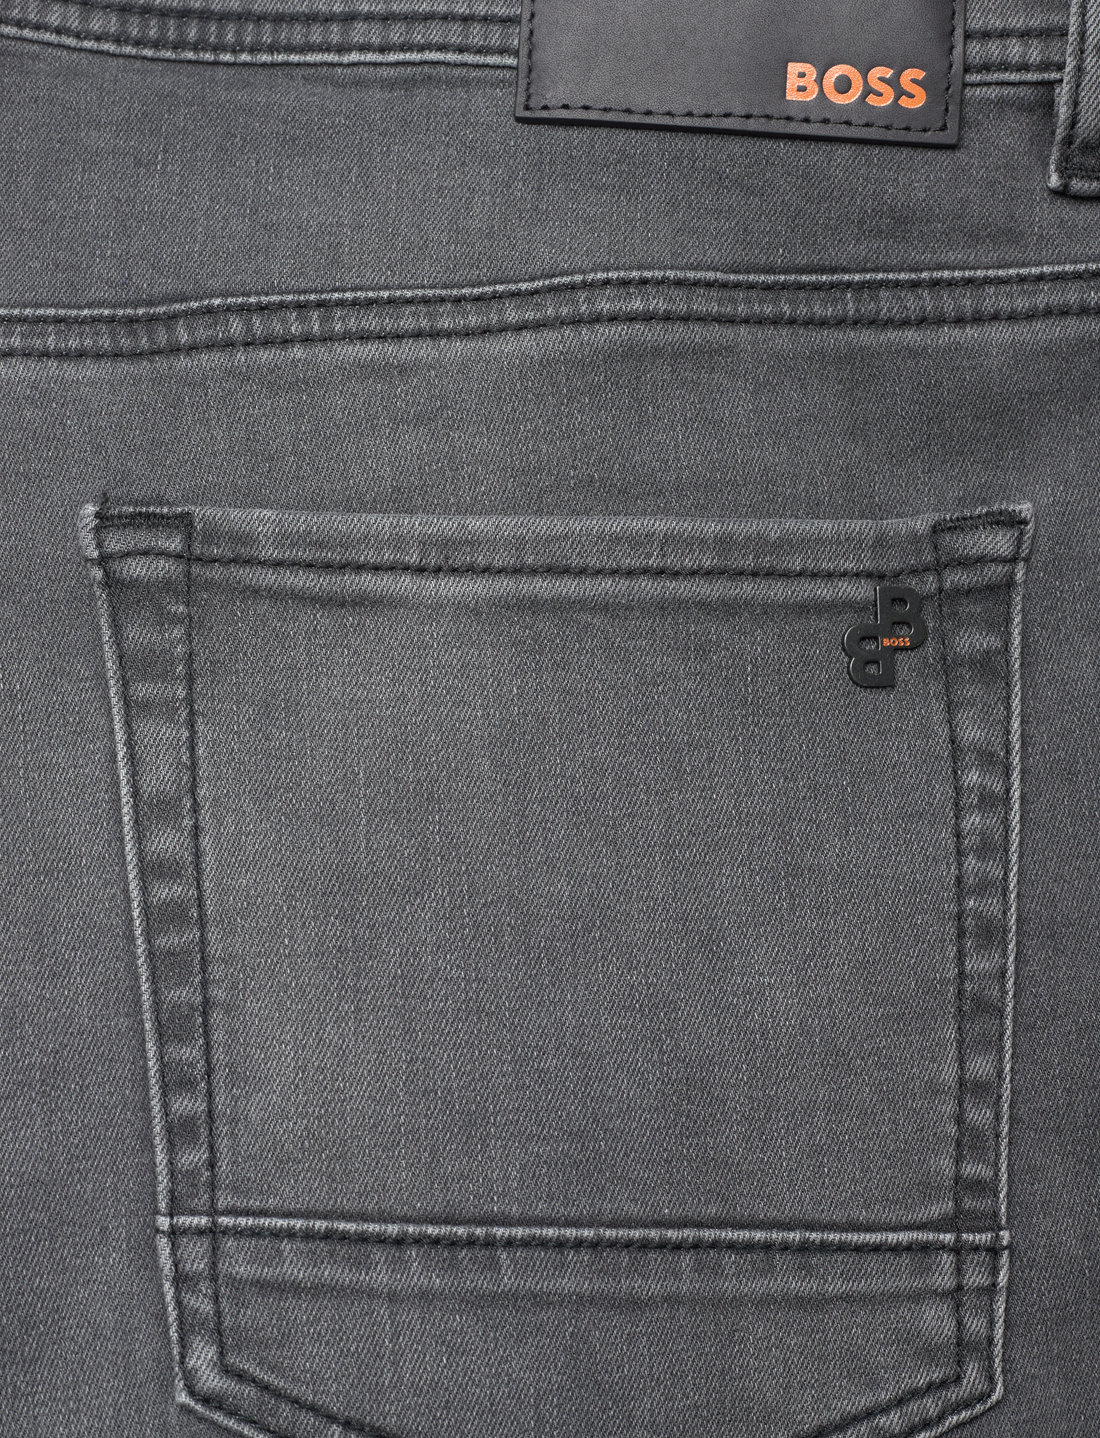 BOSS Taber Zip Bc-p-1 - Regular jeans